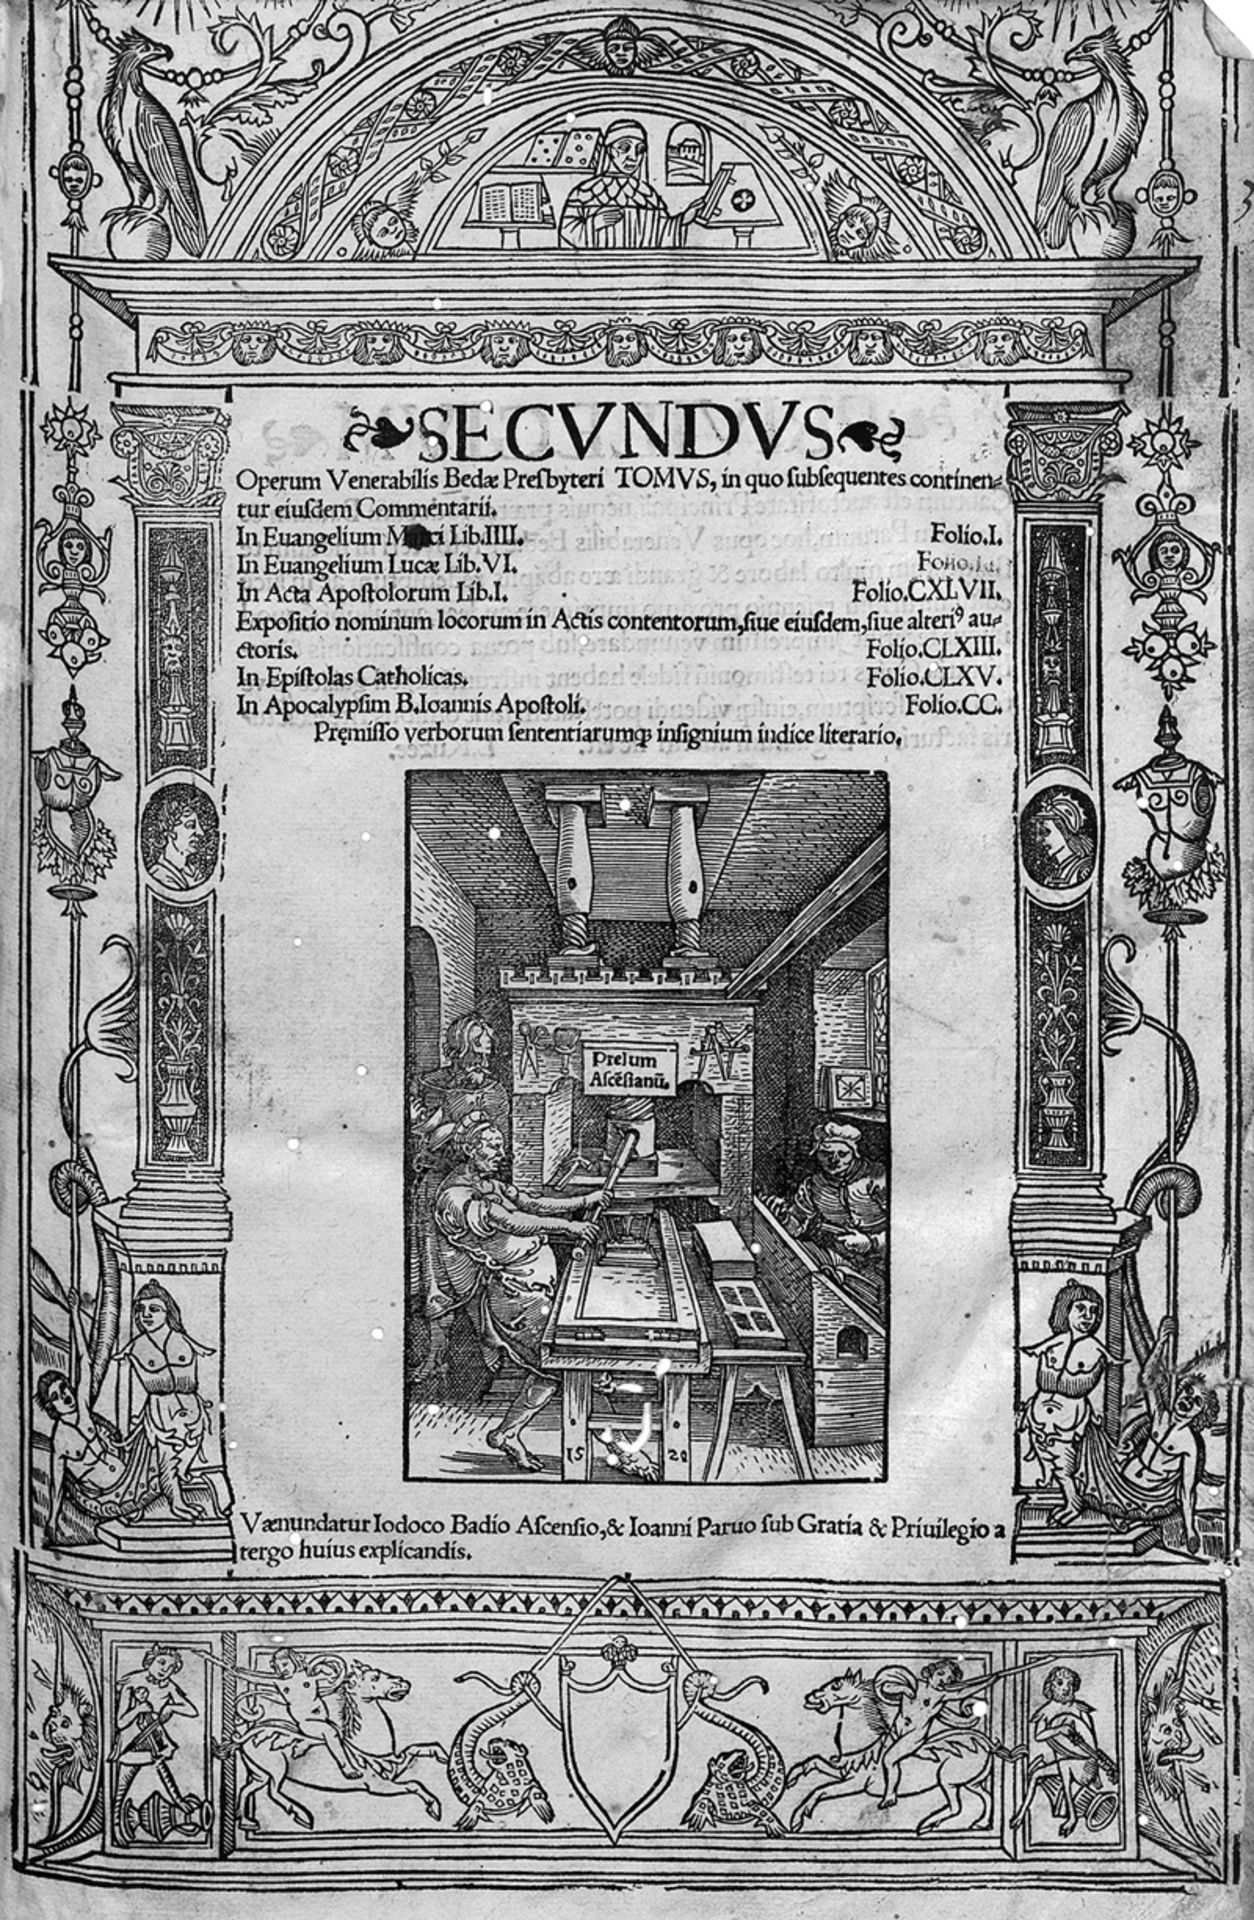 Beda Venerabilis: Secundus Operum Venerabilis Bedæ Presbyteri Tomus